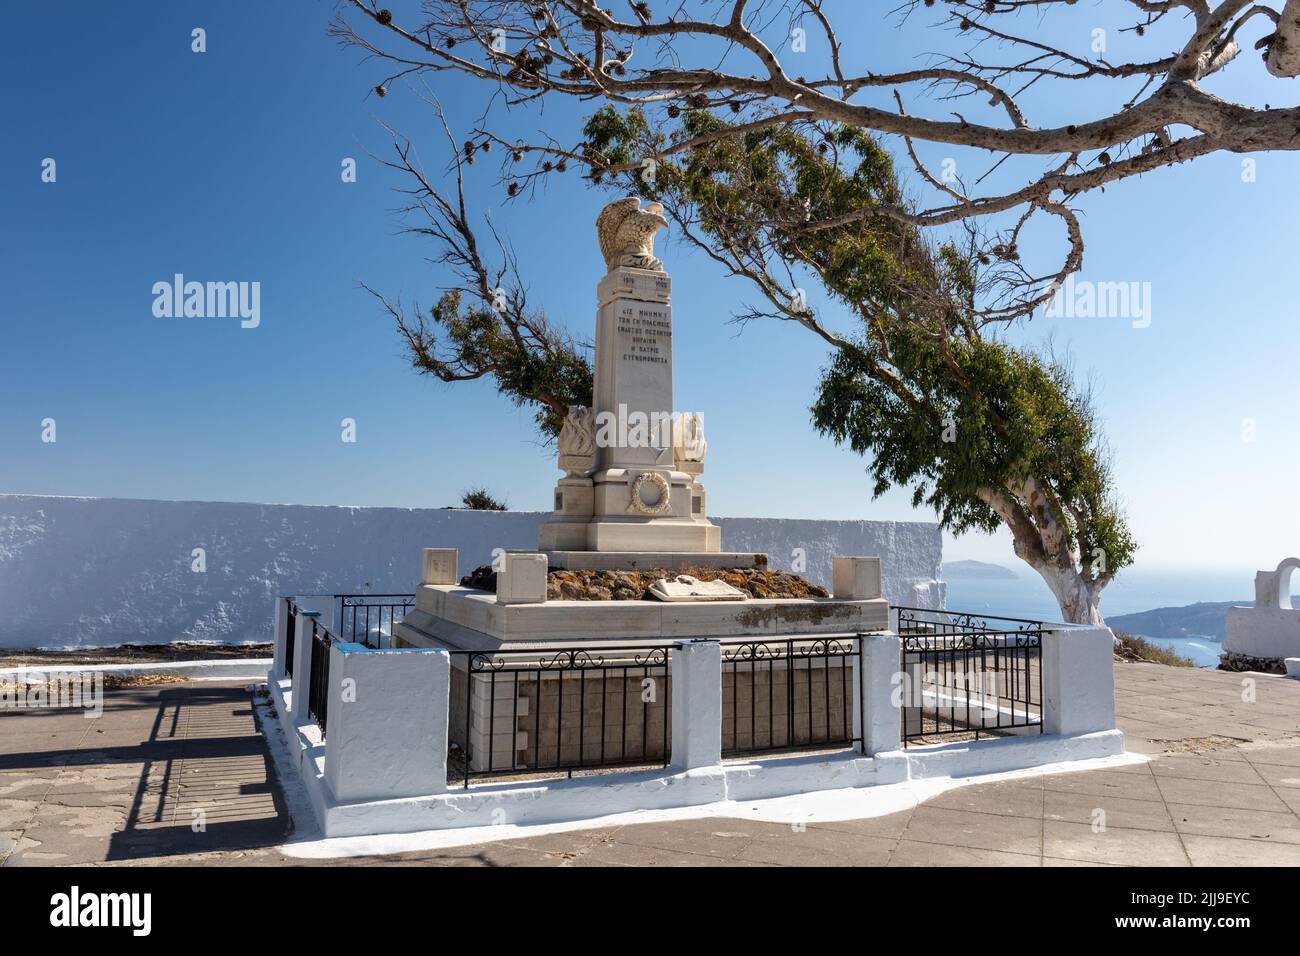 Memorial de fecha 1912 - 1922 situado en las afueras de la ciudad de Fira, islas Cícladas, Grecia, Europa Foto de stock